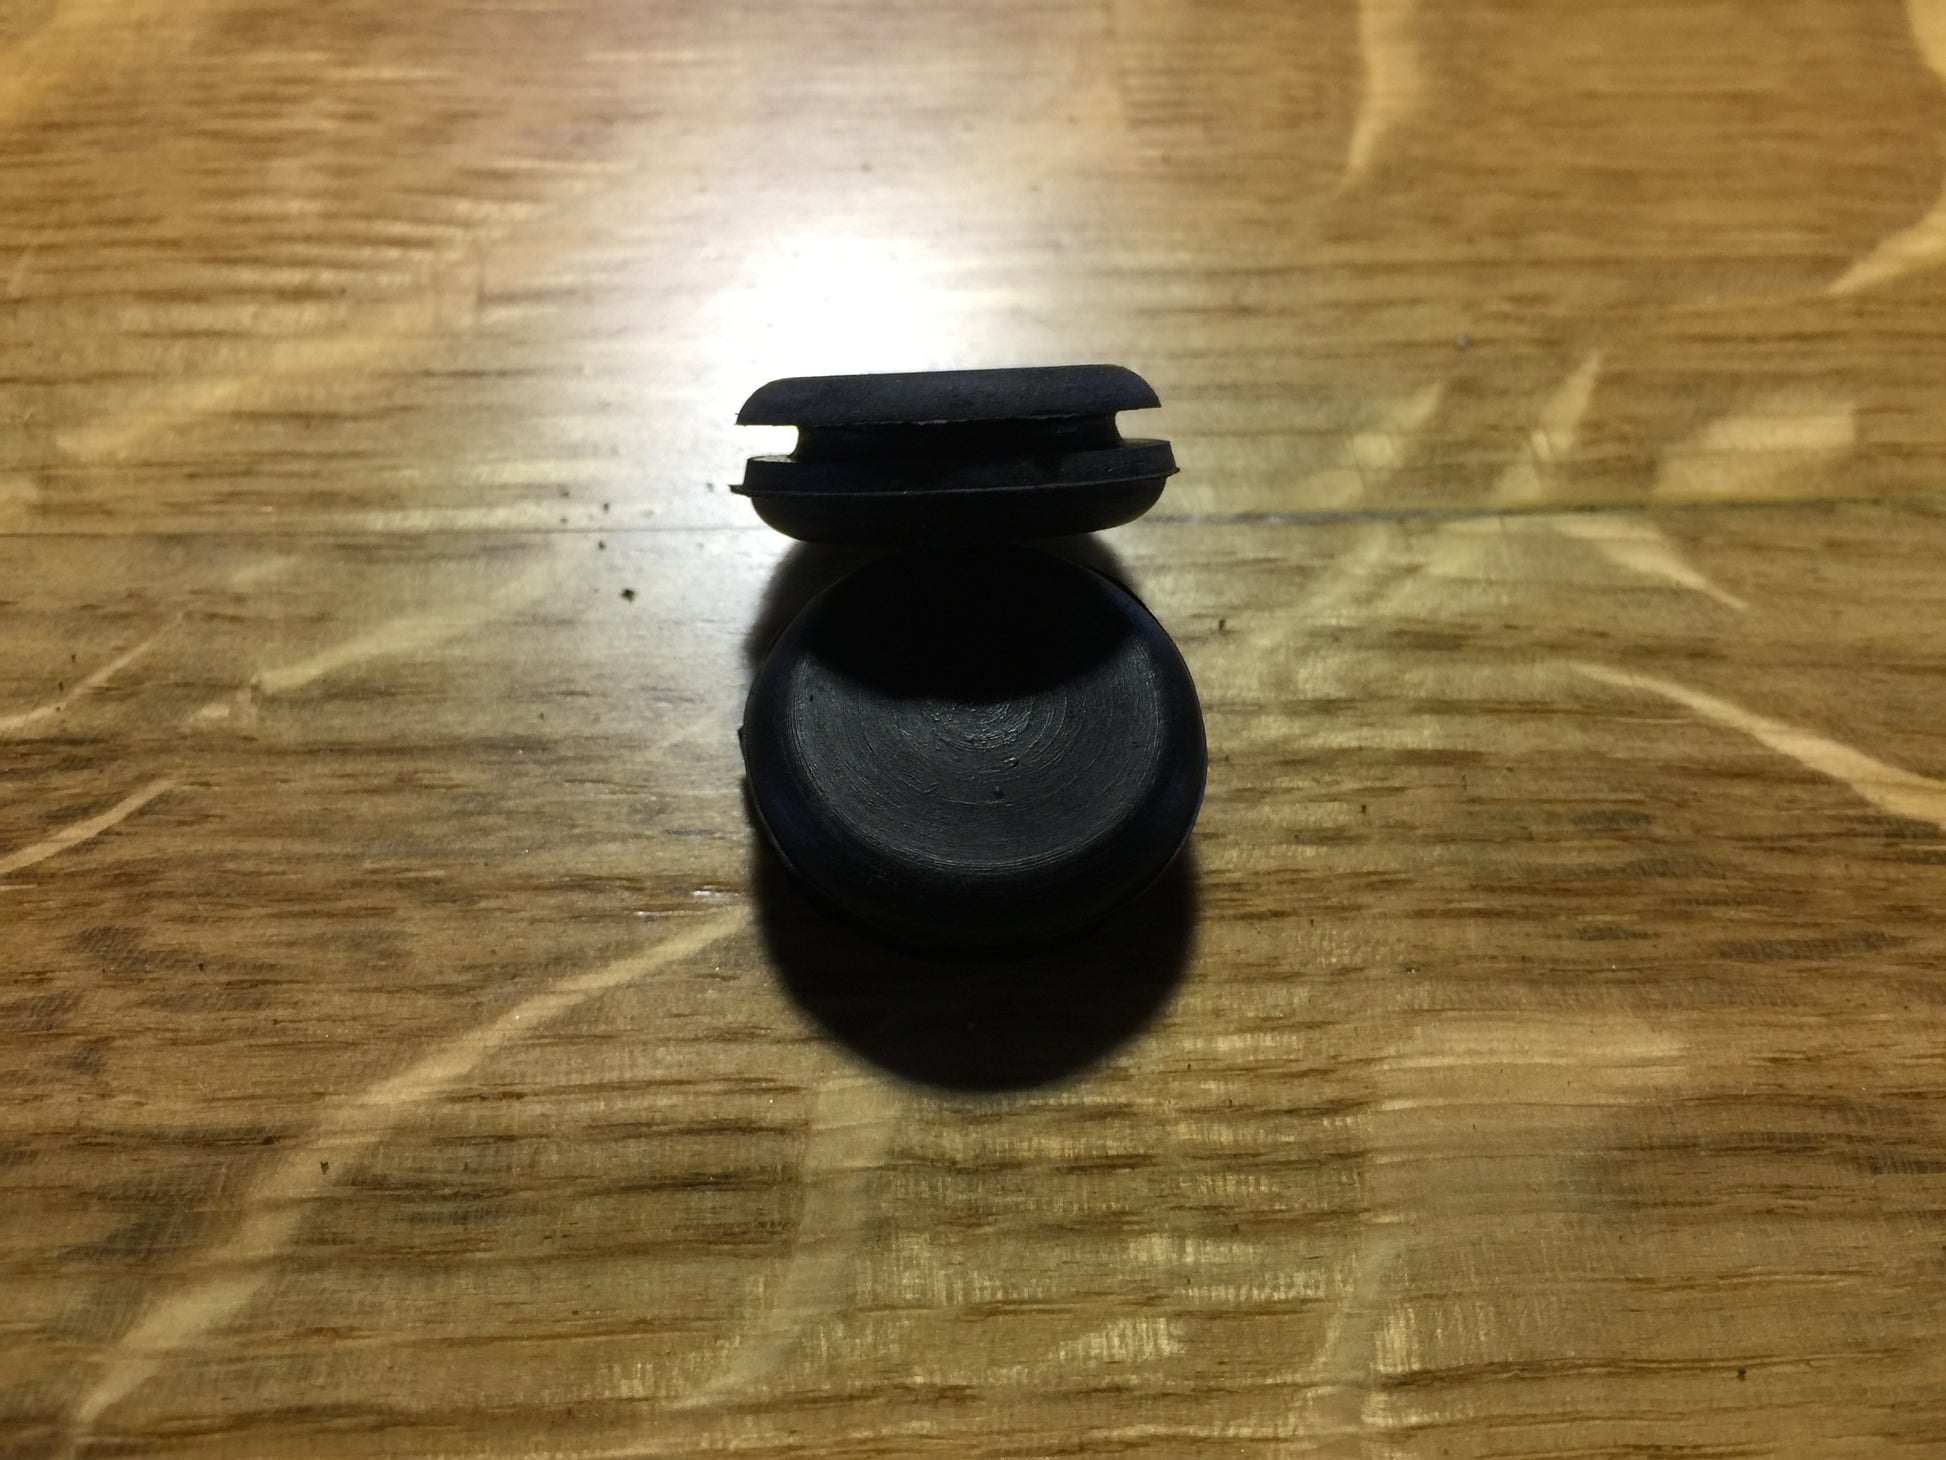 Austin Healey Sprite Sprite door hinge screw rubber plugs (set of 8)  - Bugeye